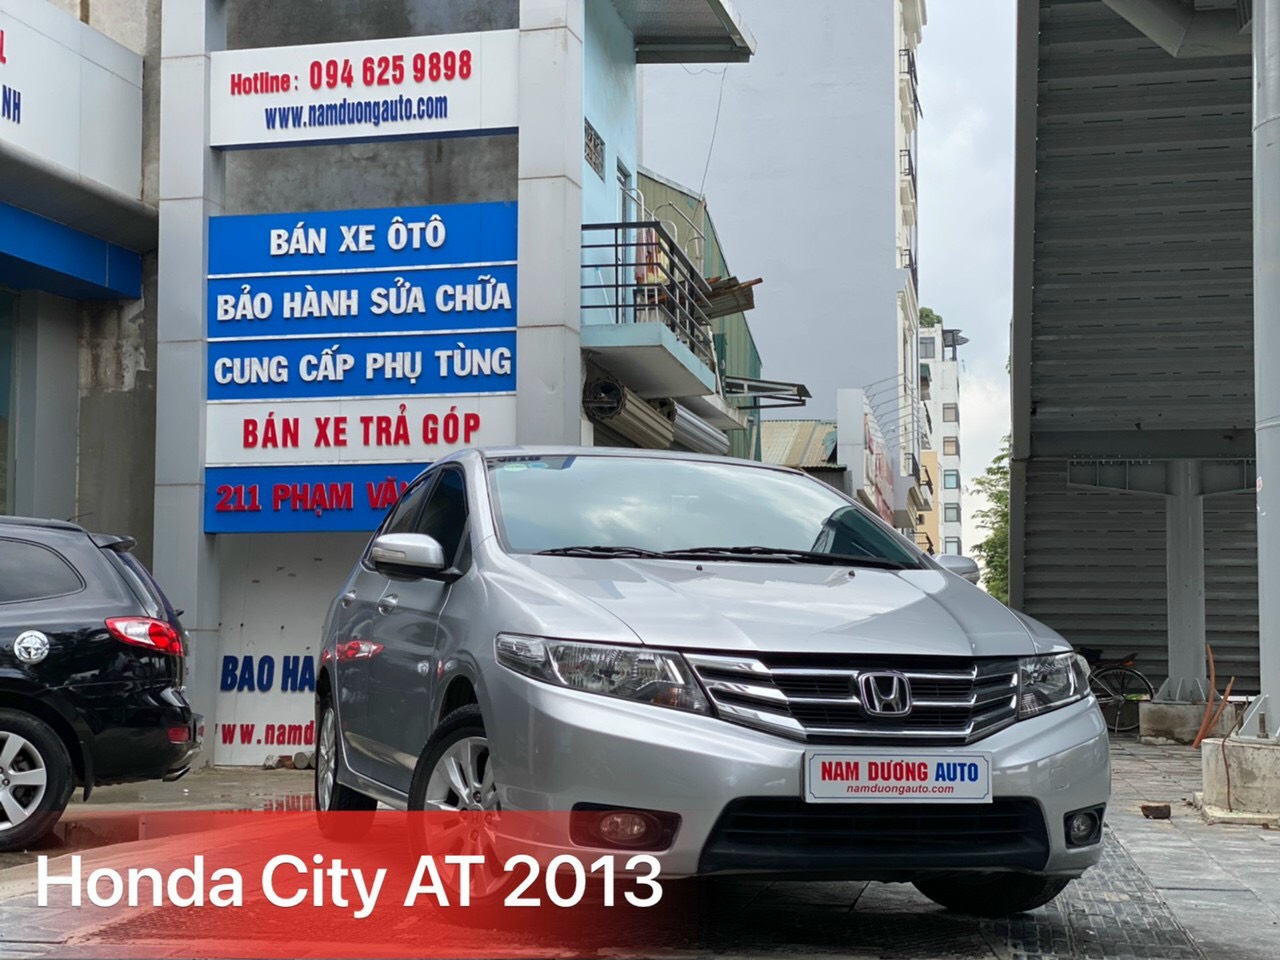 Mua Bán Xe Honda City 2013 Giá Rẻ Toàn quốc